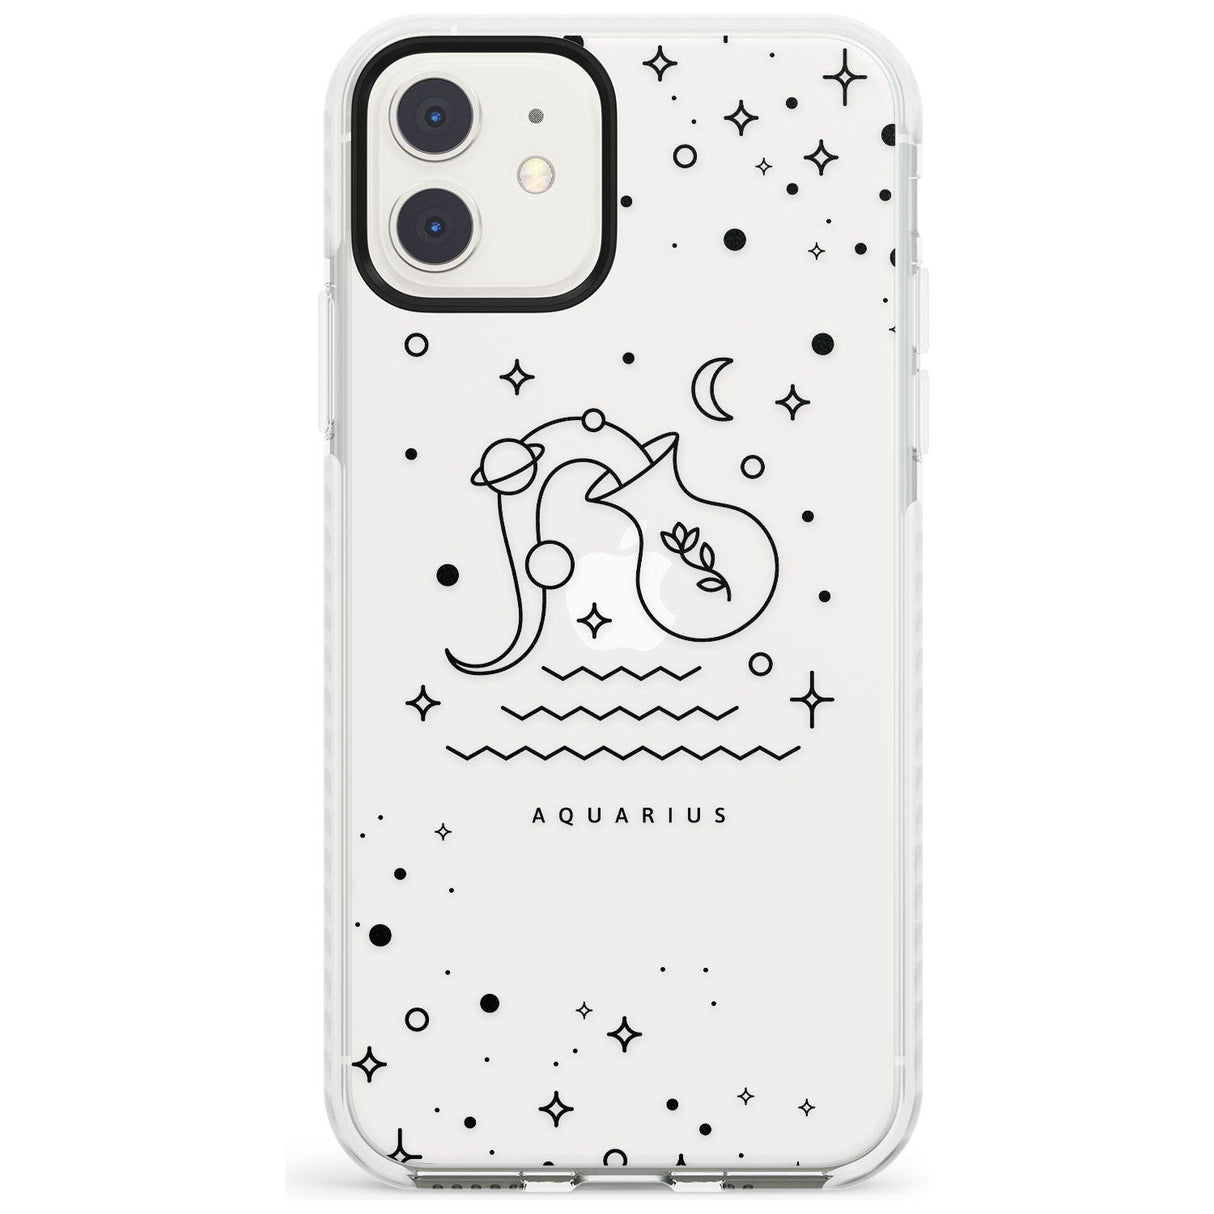 Aquarius Emblem - Transparent Design Impact Phone Case for iPhone 11